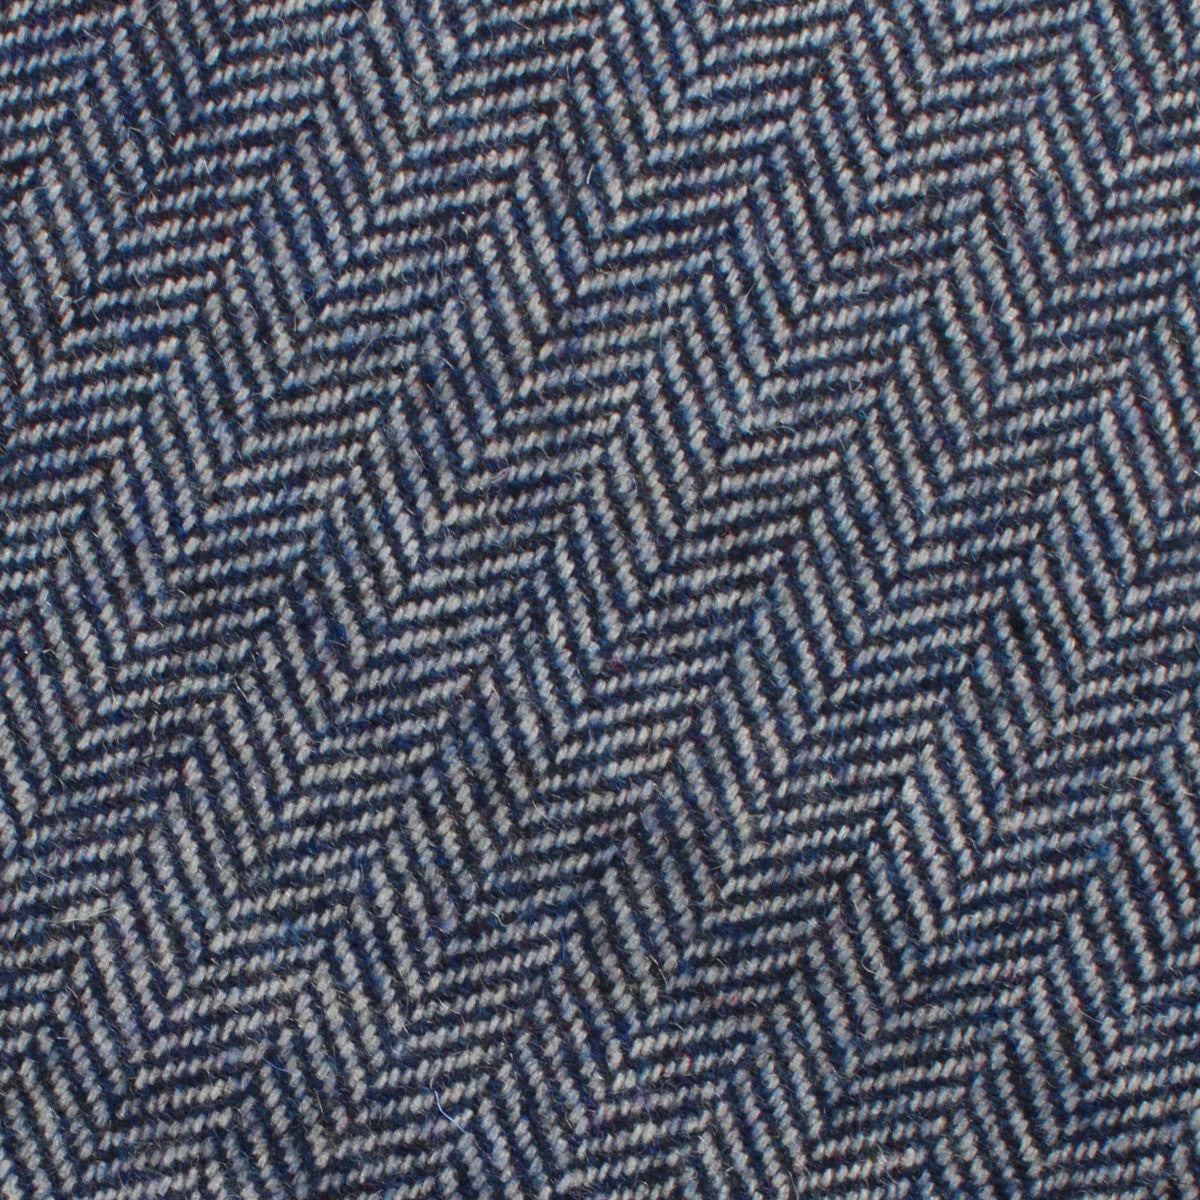 Irish Herringbone Blue Wool Fabric Self Diamond Bowtie